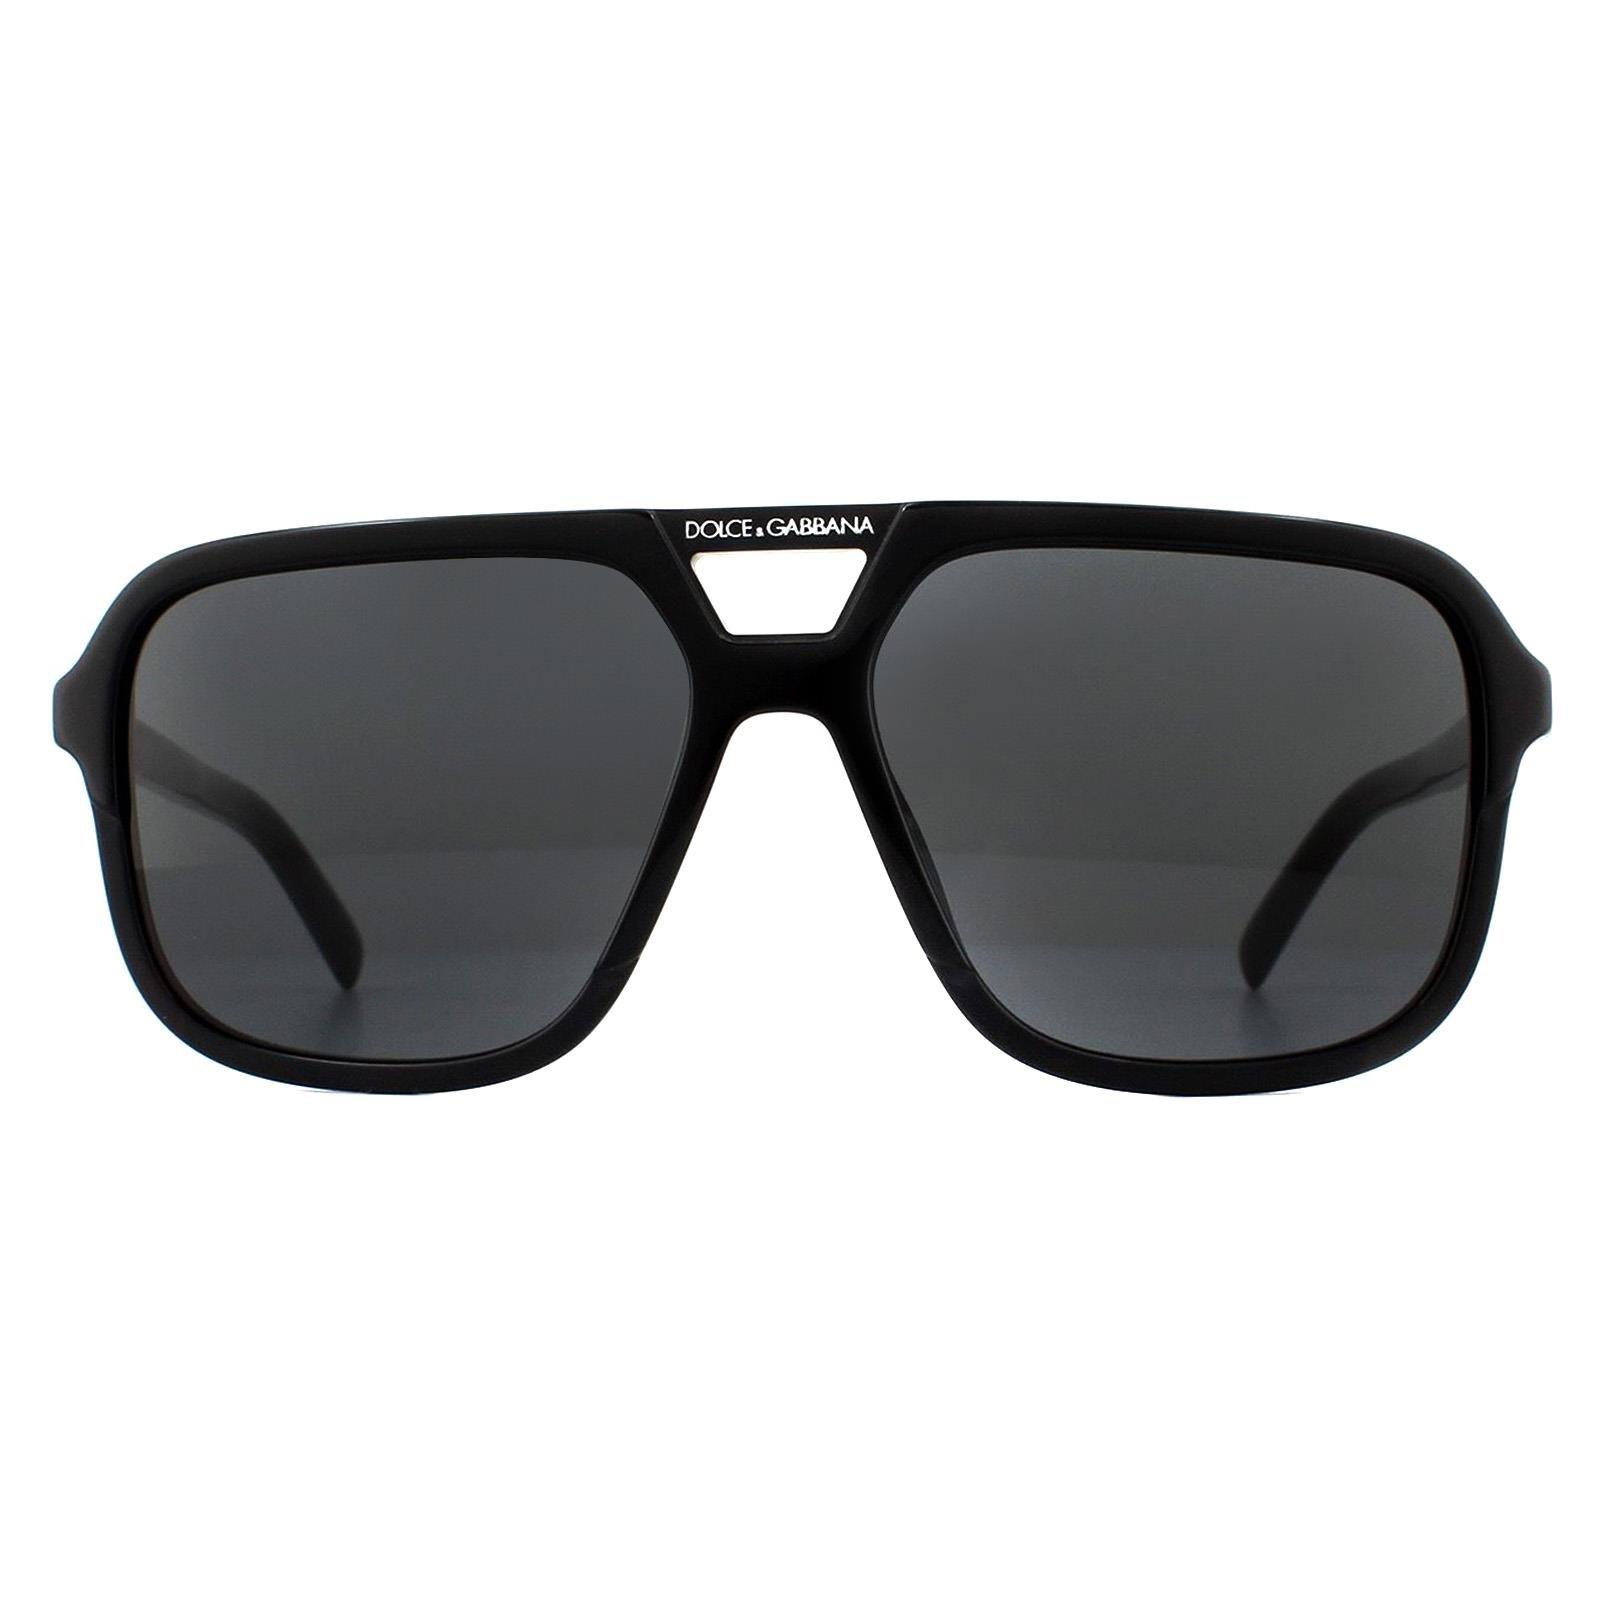 черные солнцезащитные очки на клипсе off white цвет black dark grey Черные темно-серые солнцезащитные очки-авиаторы Dolce & Gabbana, черный